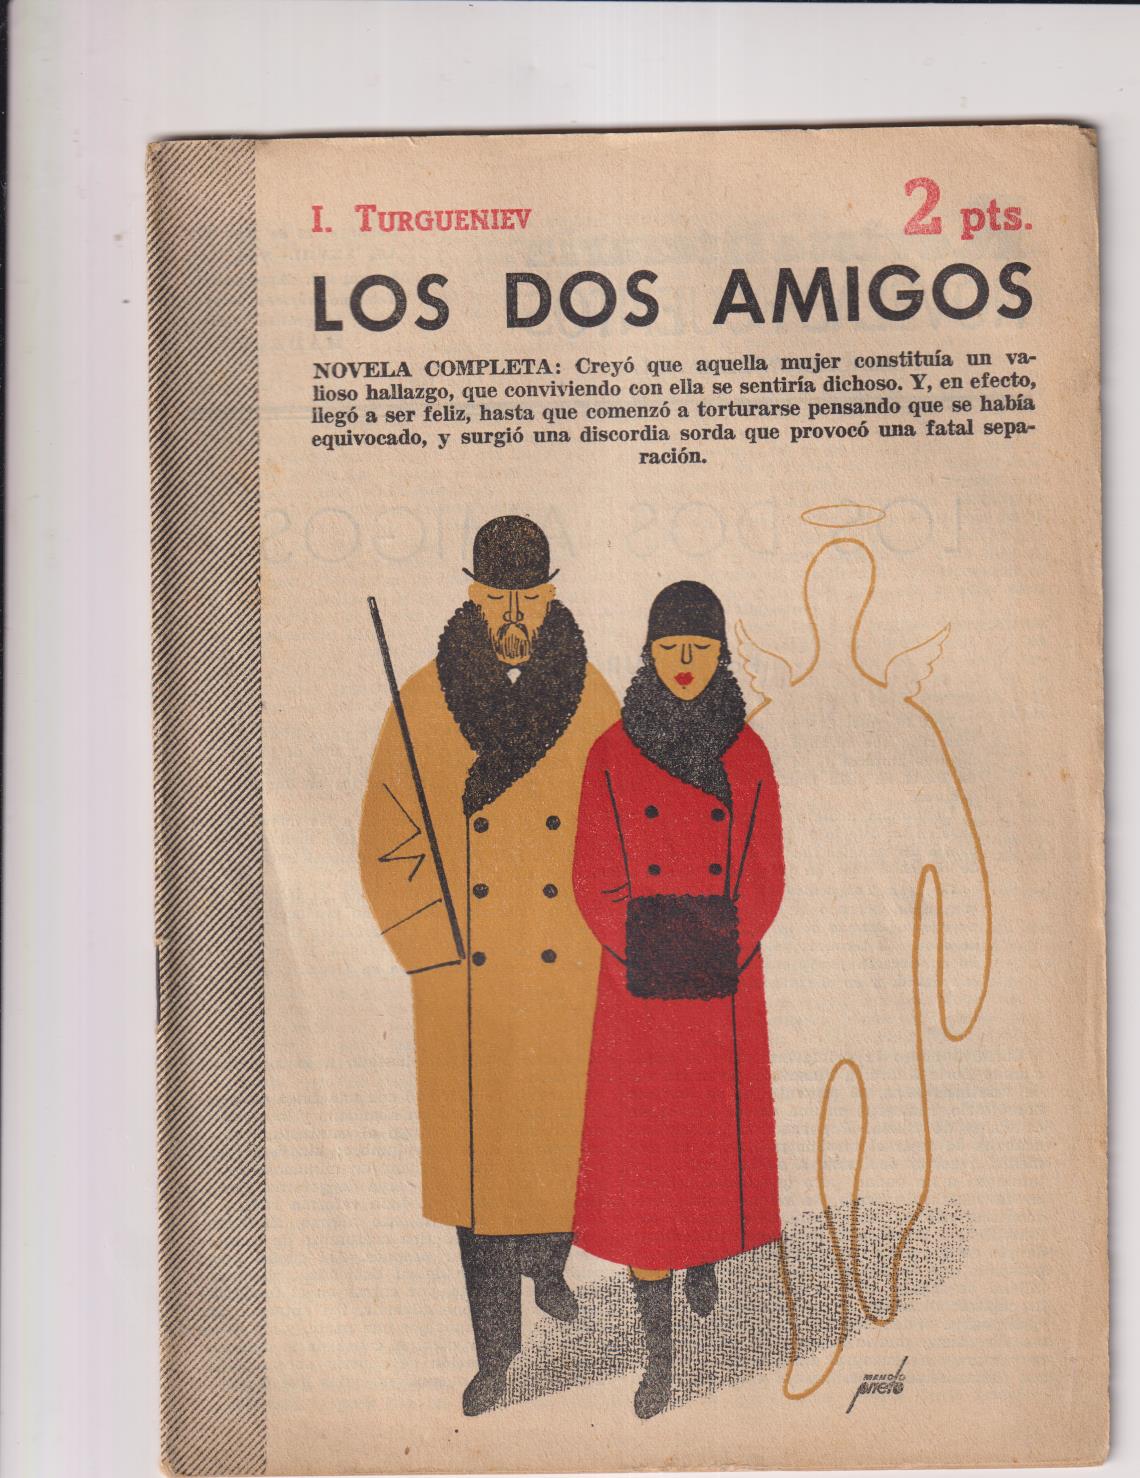 Revista Literaia Novelas y Cuentos mº 1315. Ivan Turgueniev. Los dos amigos, Año 1958